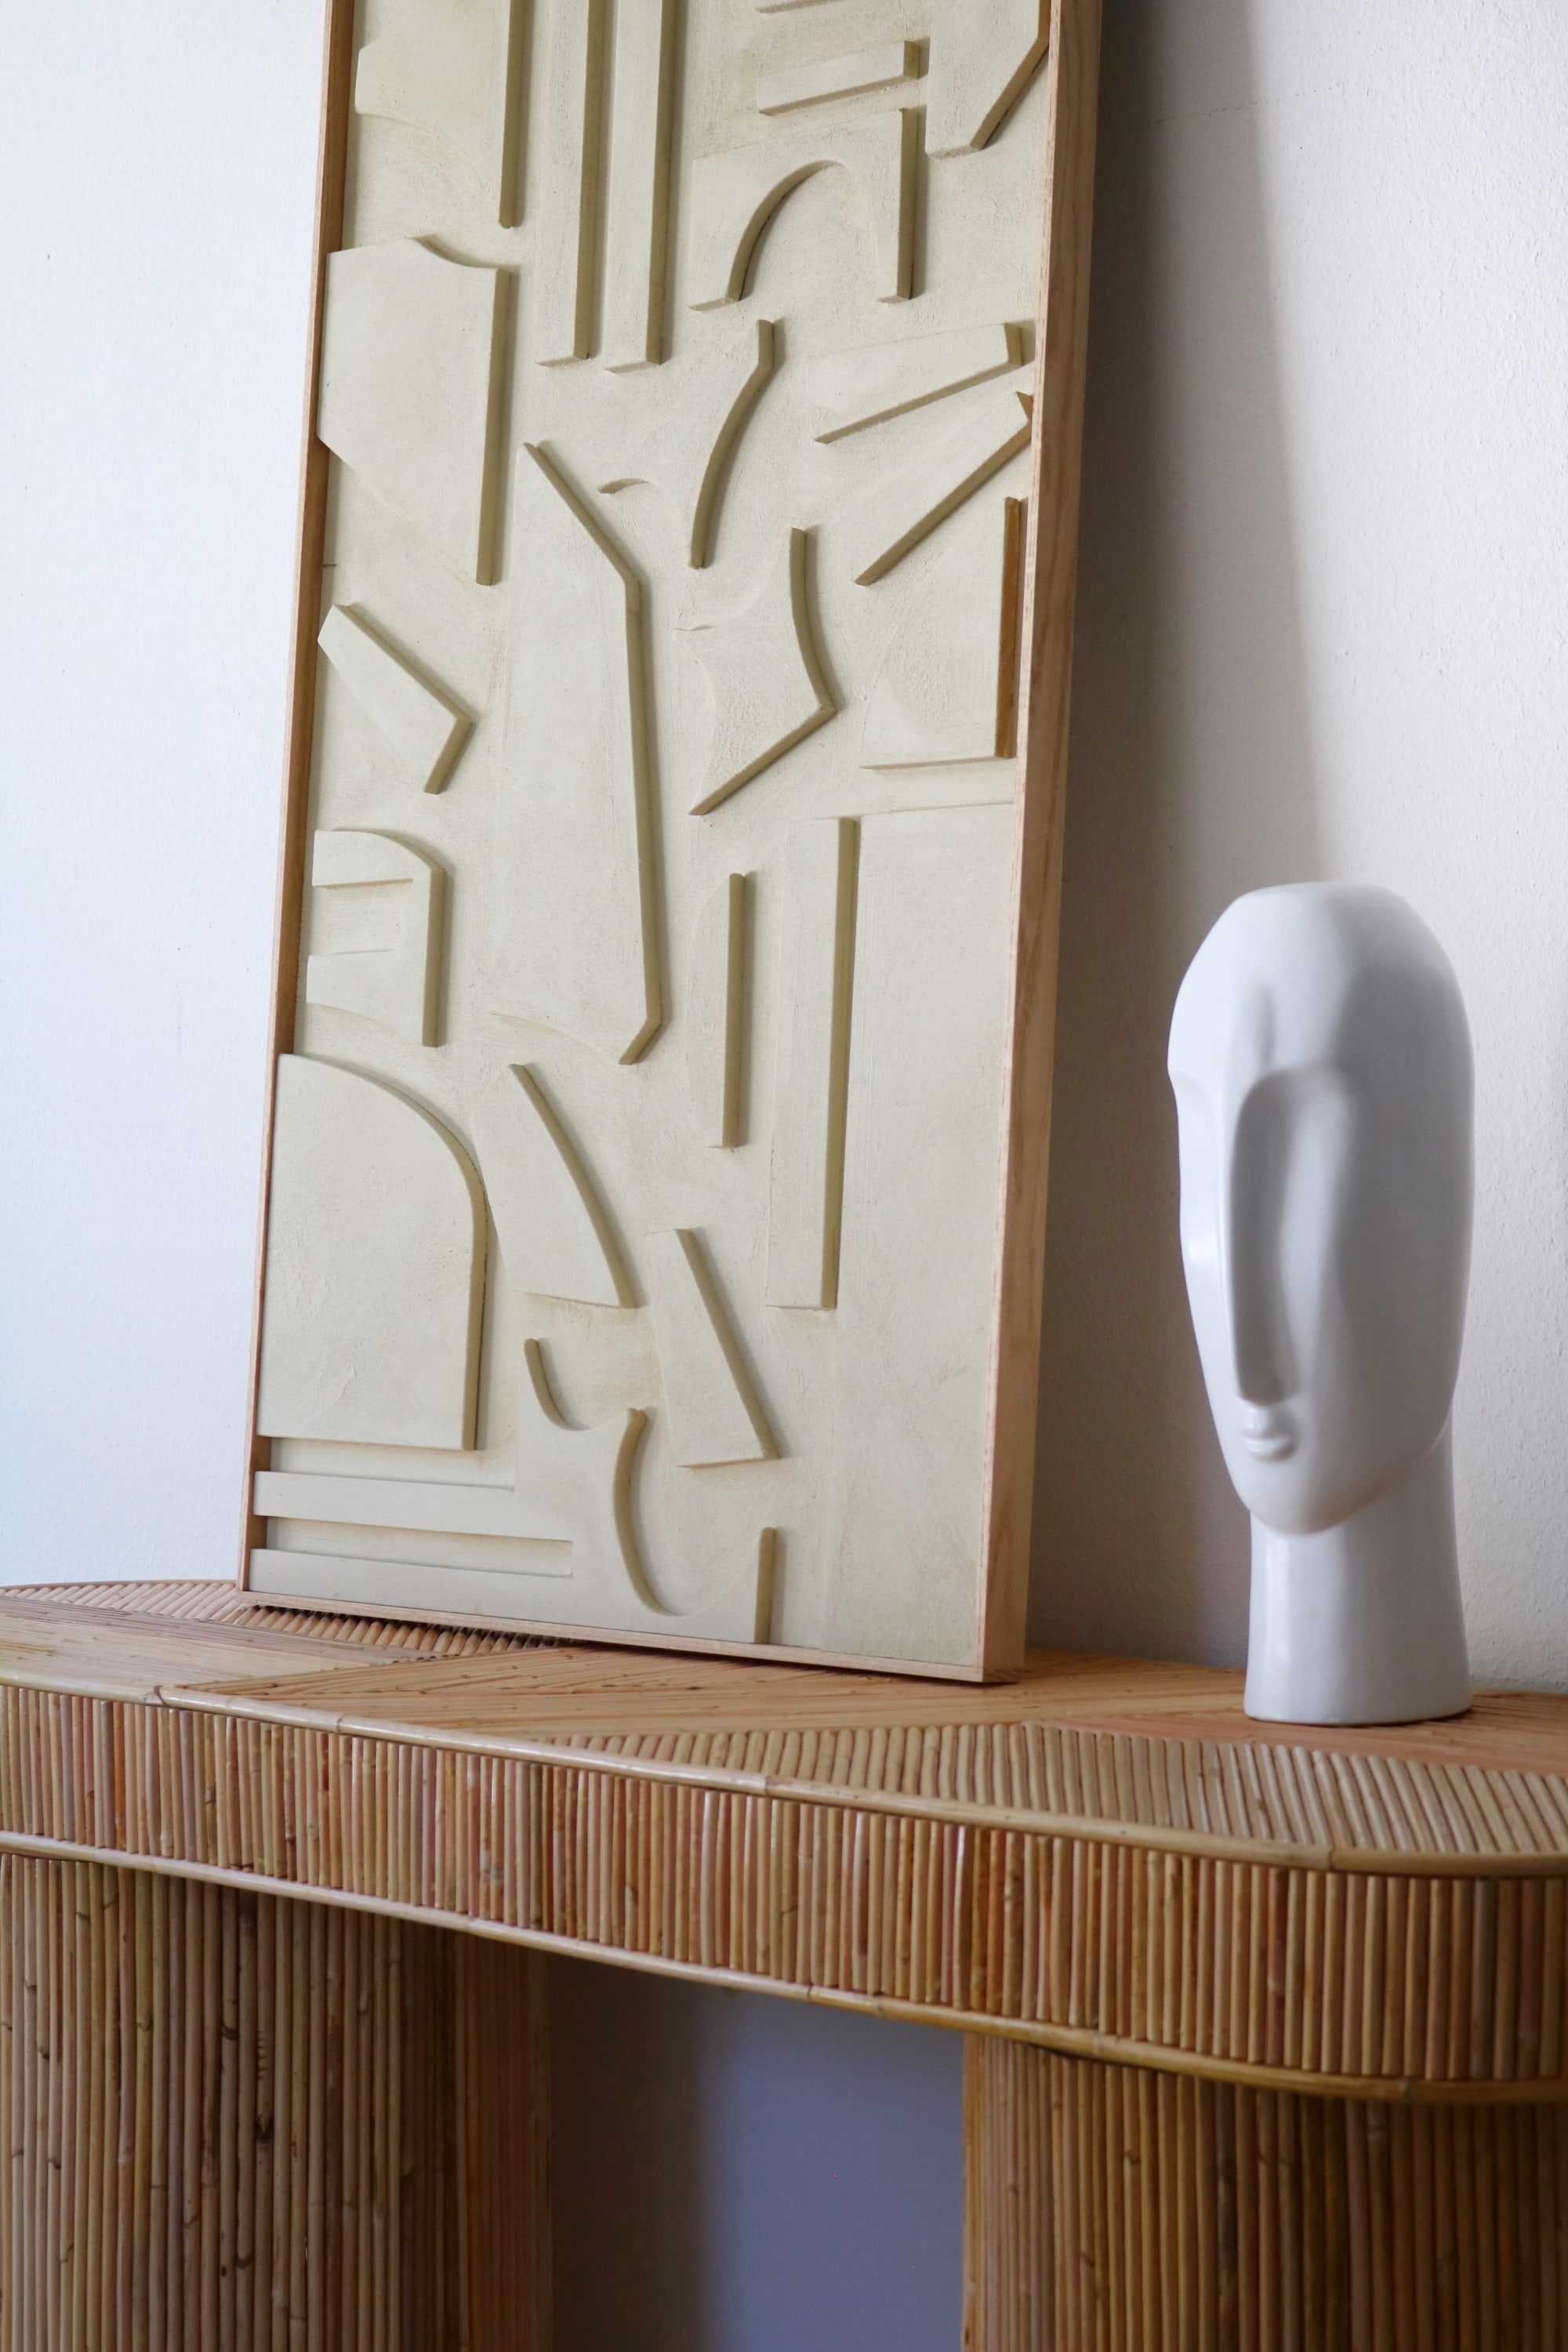 Abstract Wood Art, Wood Wall Art, Wood Sculpture, Modern Art by